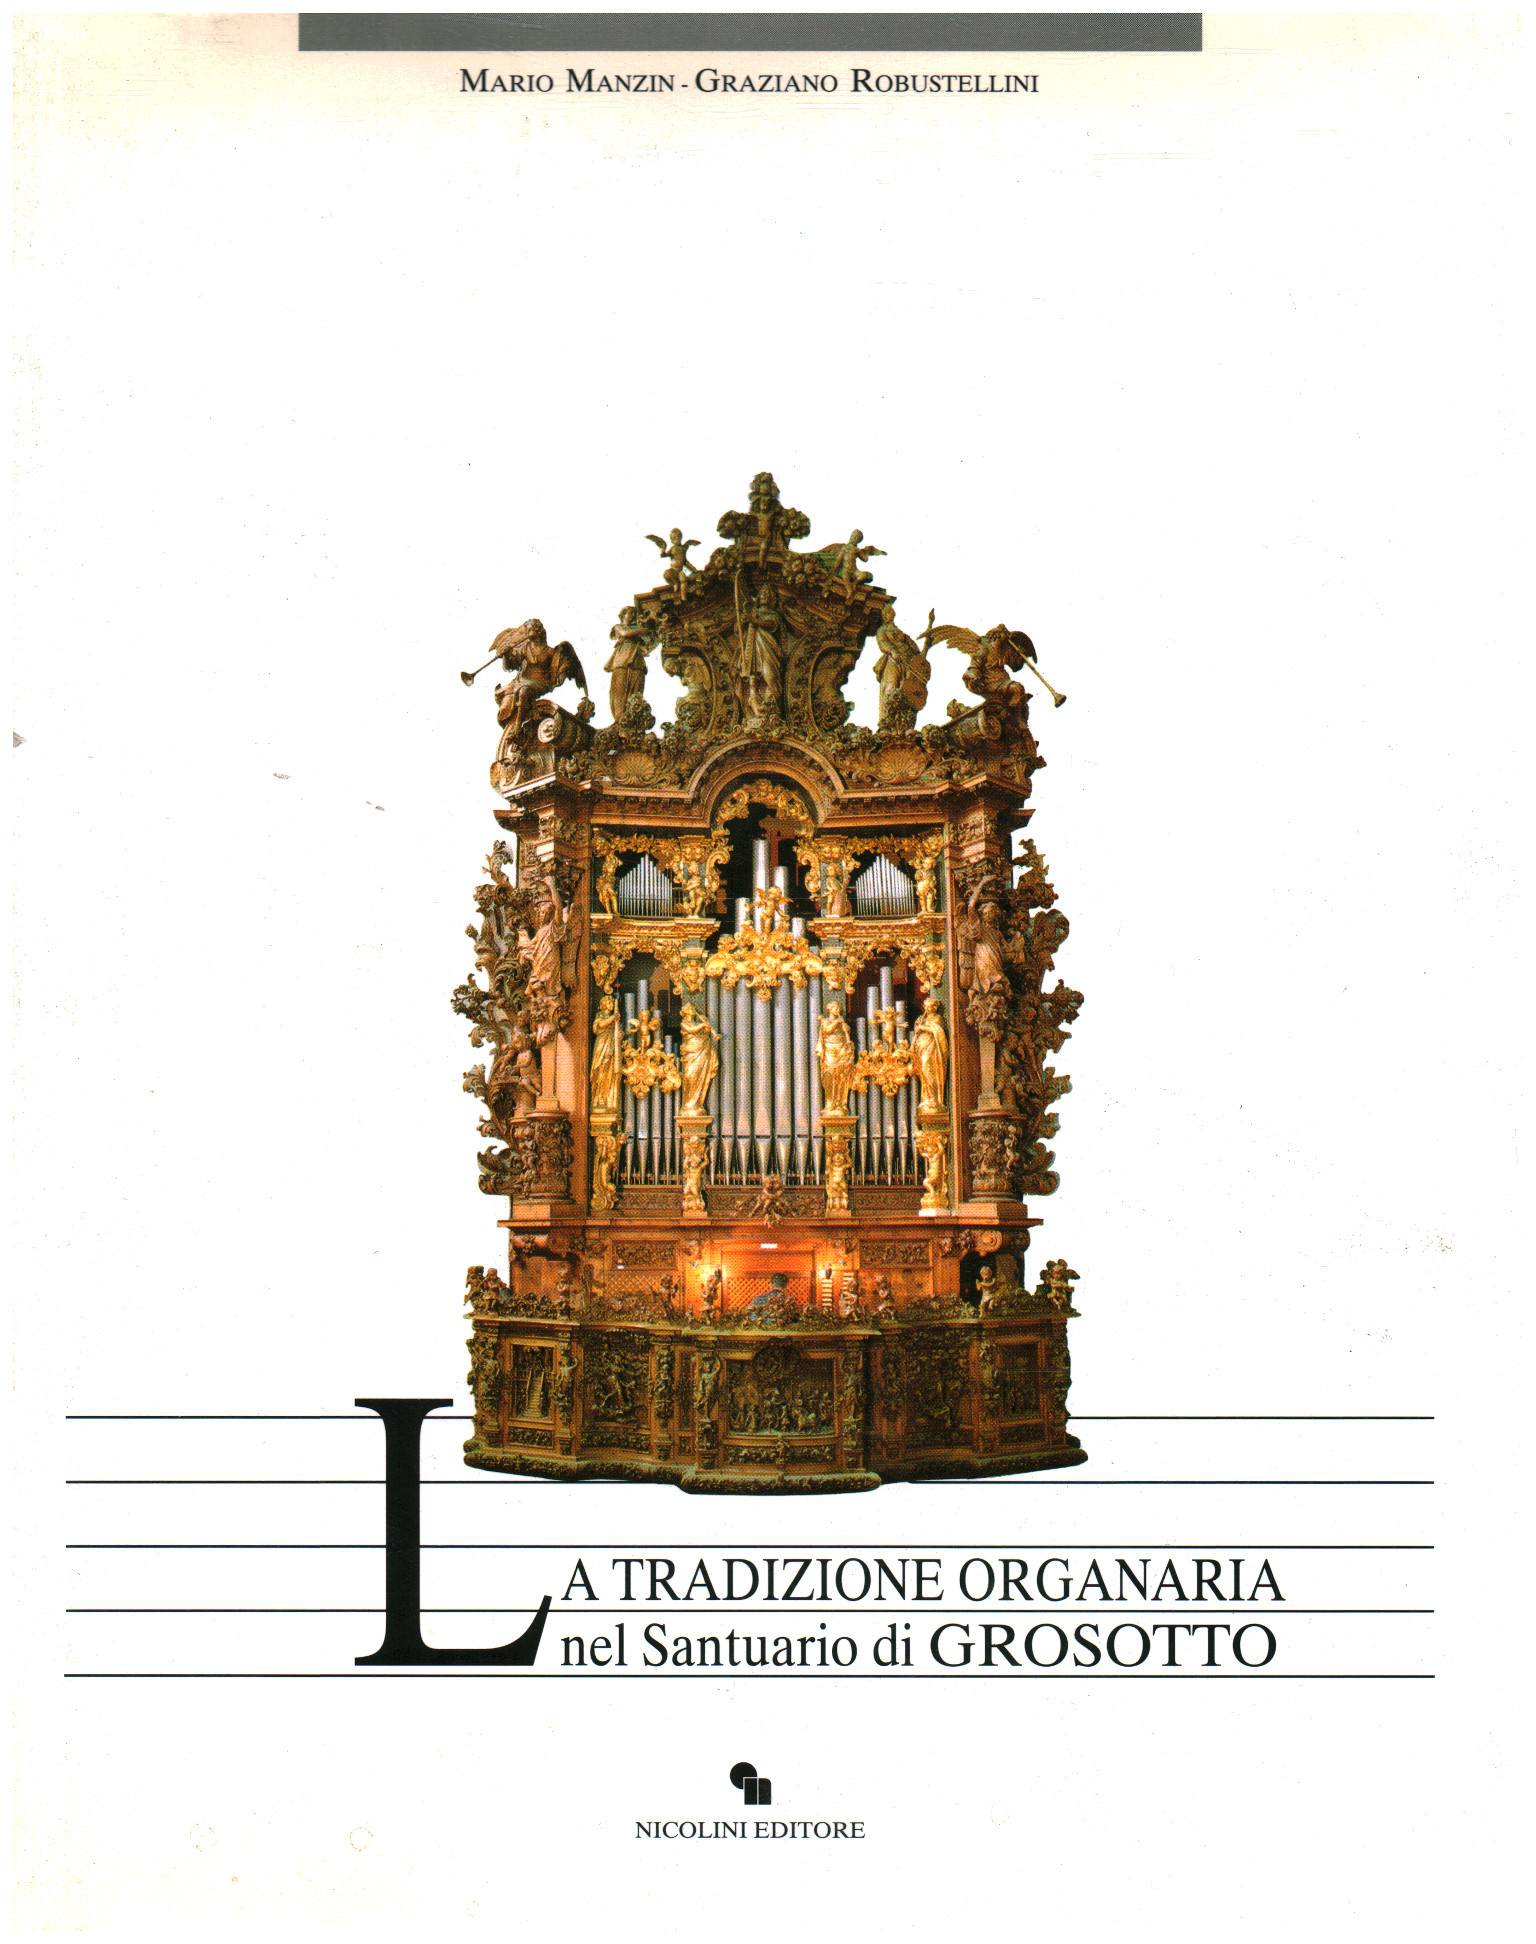 La tradizione organaria nel Santuario di Grosotto, Mario Manzin Graziano Robustellini